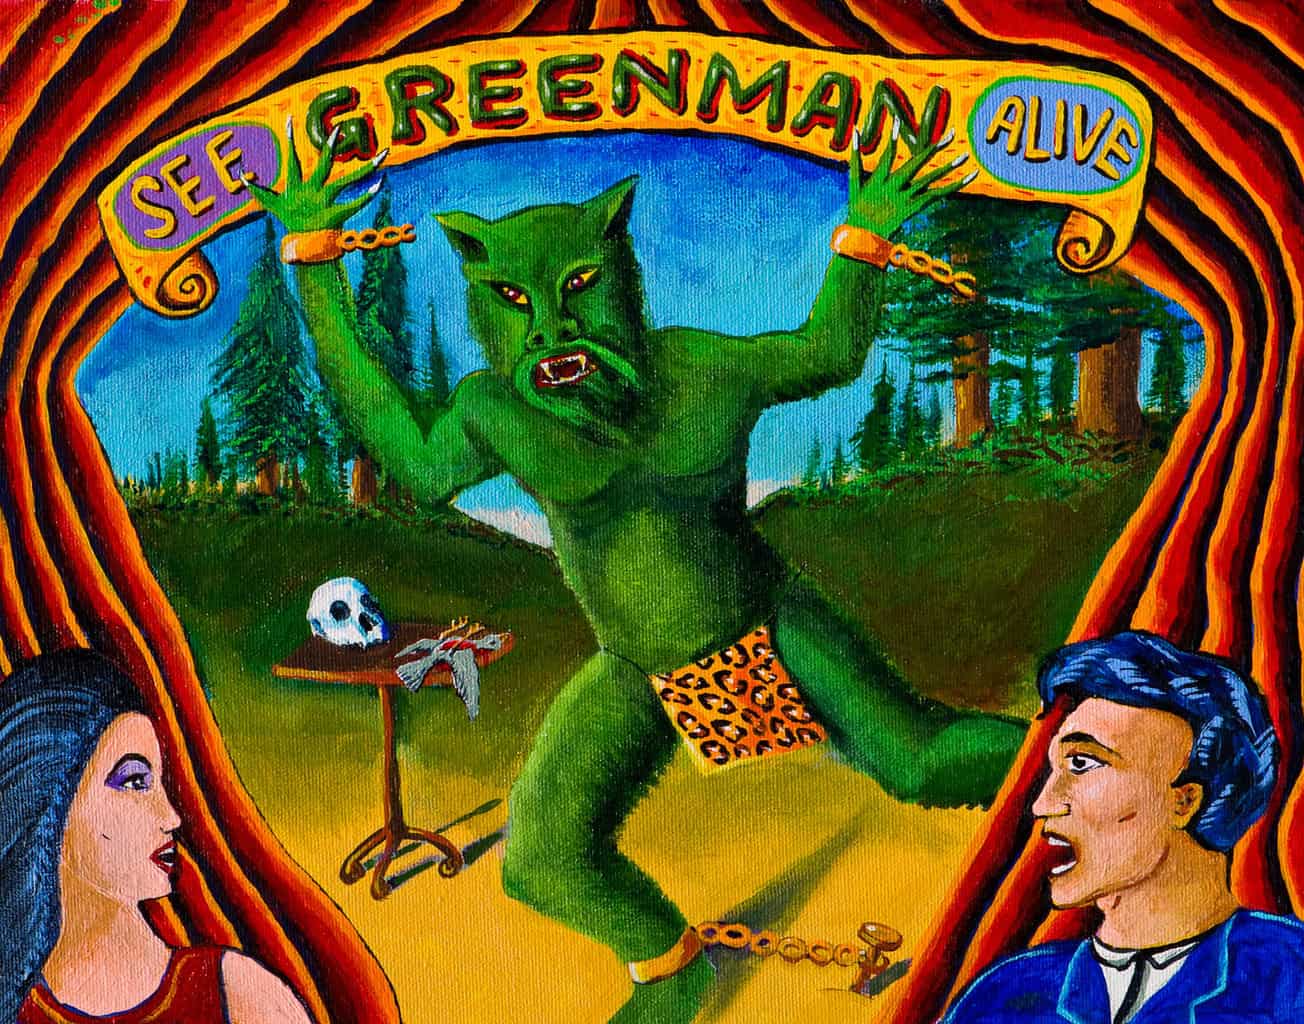 SEE-Green Man